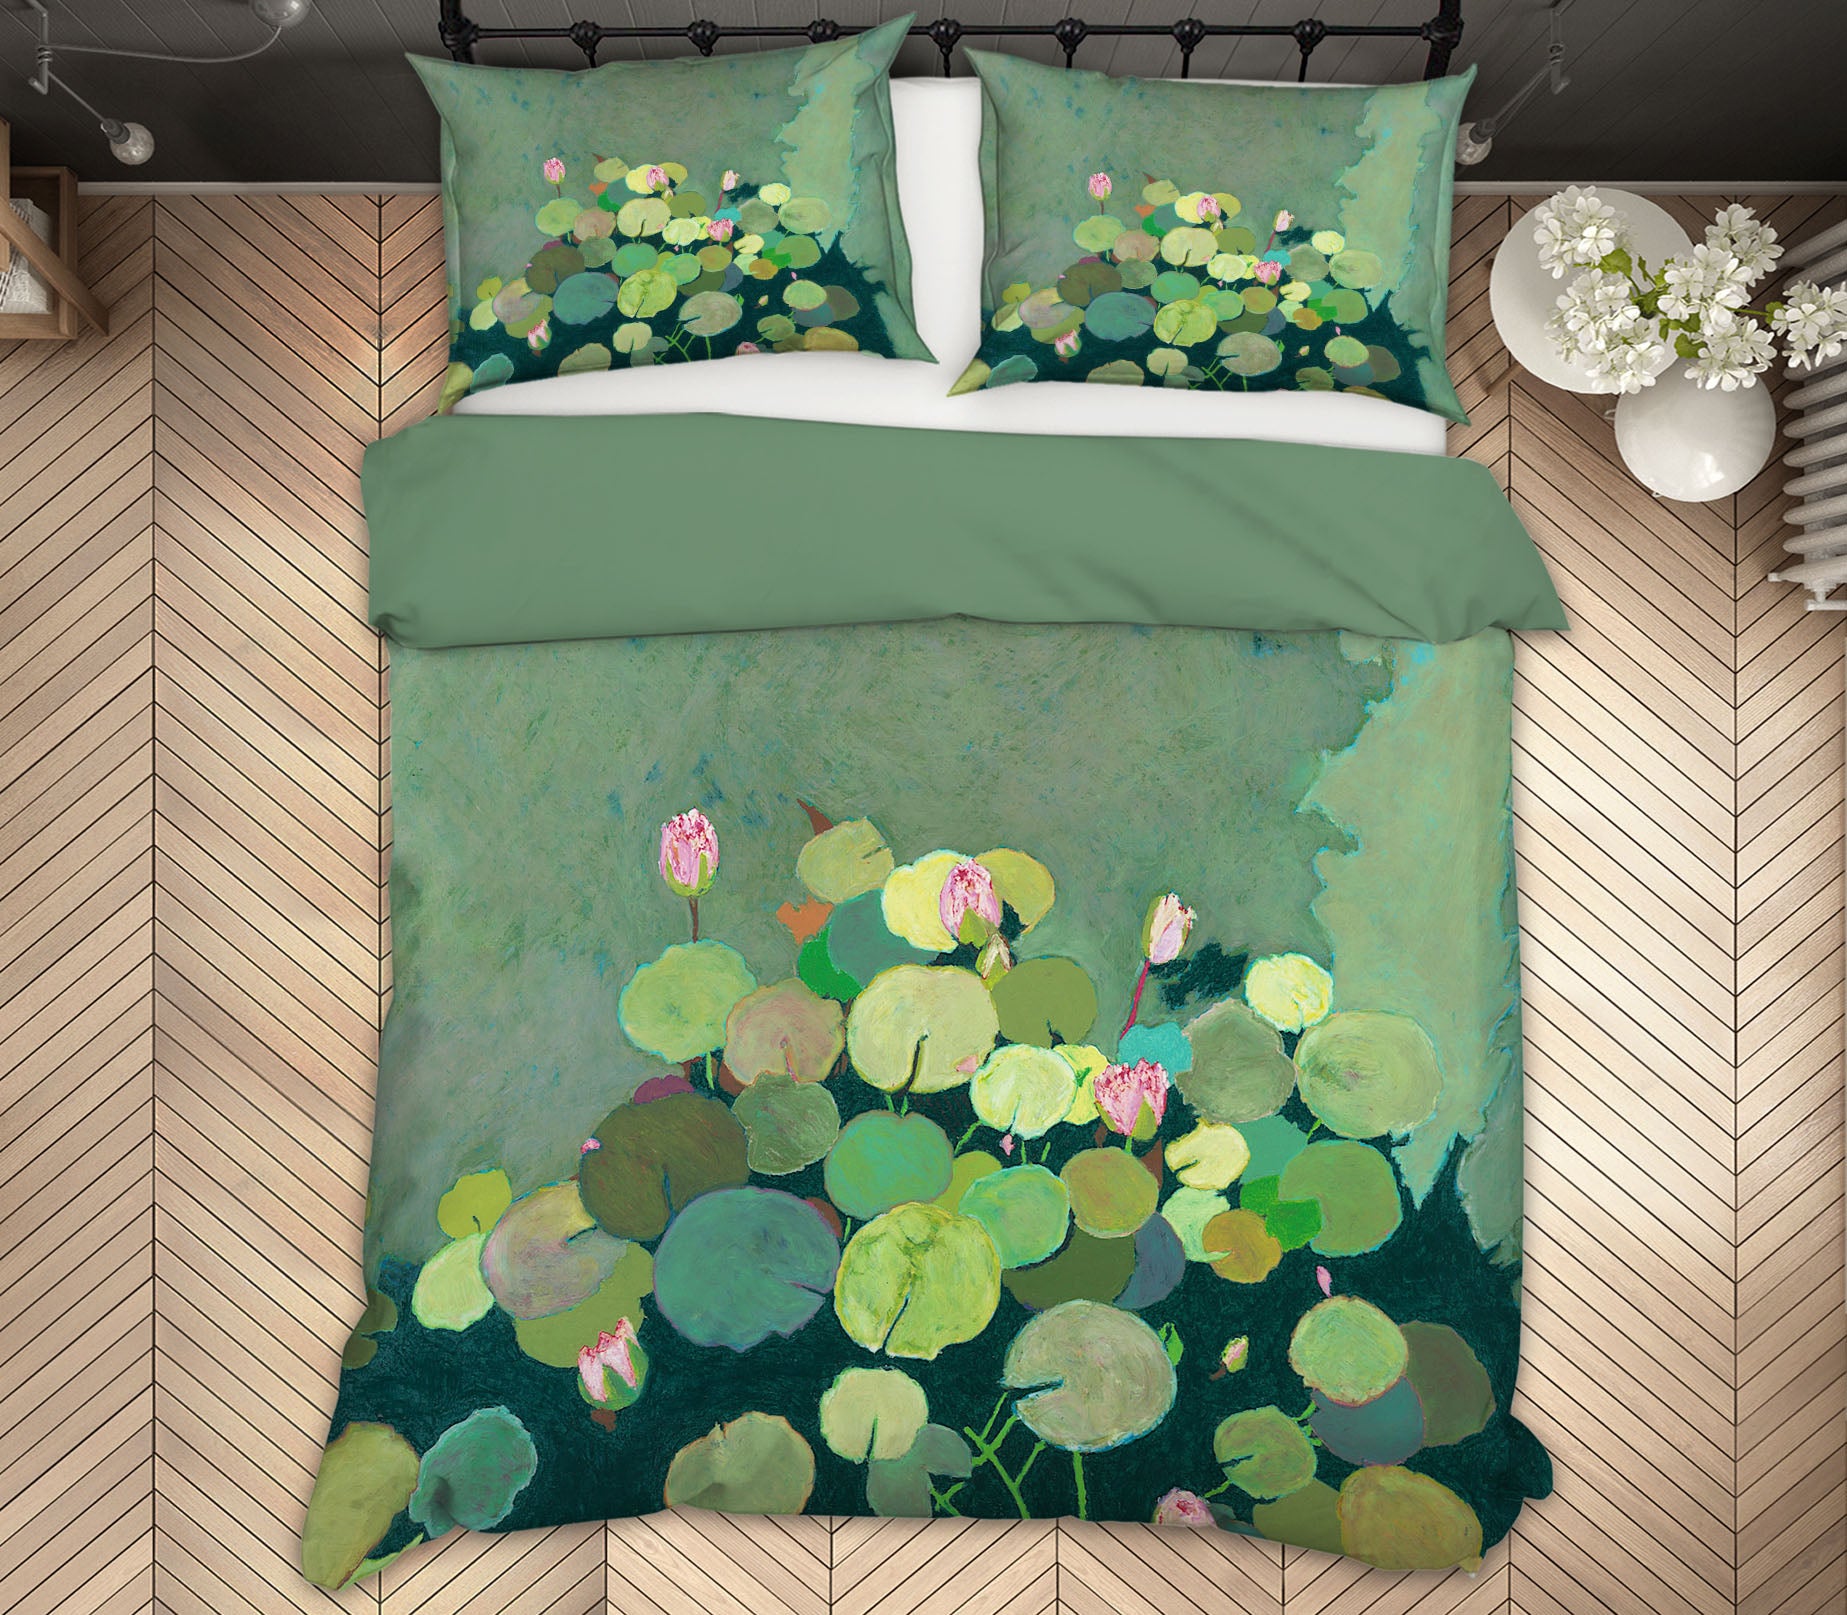 3D Lotus Leaf Pond 1155 Allan P. Friedlander Bedding Bed Pillowcases Quilt